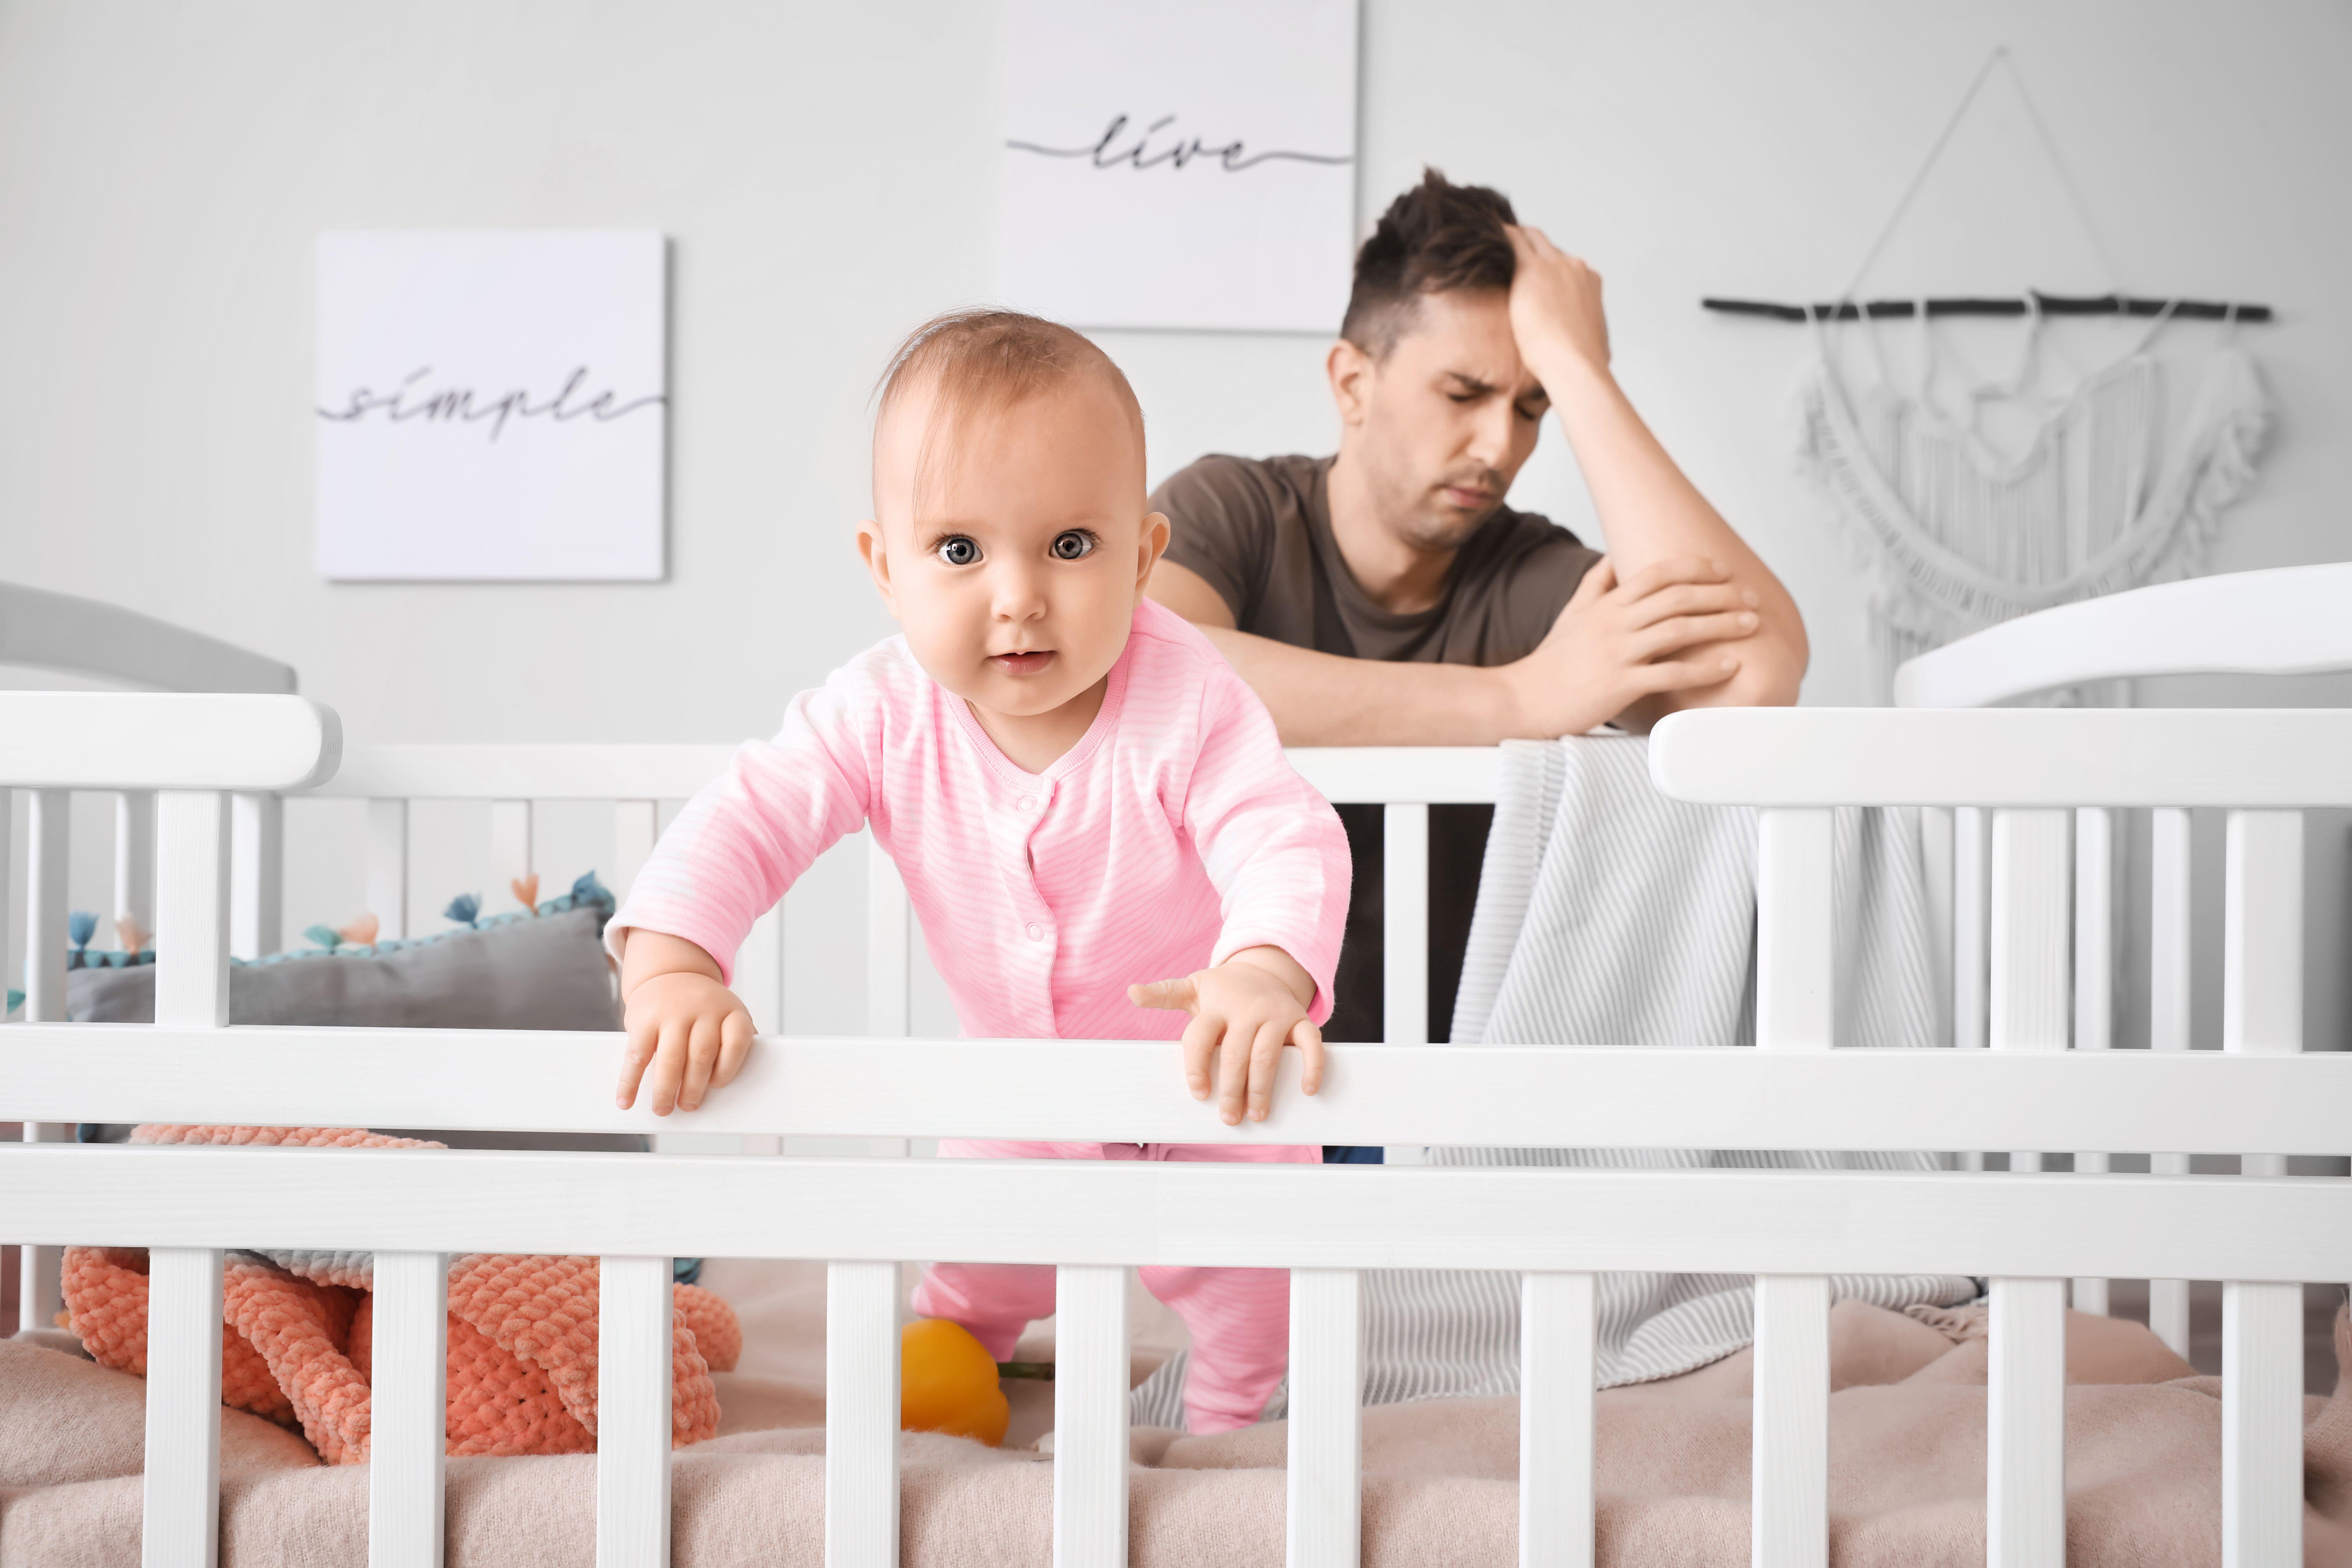 Heidi Skudder erklärte, dass der Mythos, dass Babys dazu gebracht werden, nicht zu schlafen, wahr ist "schädlich" zu den Eltern